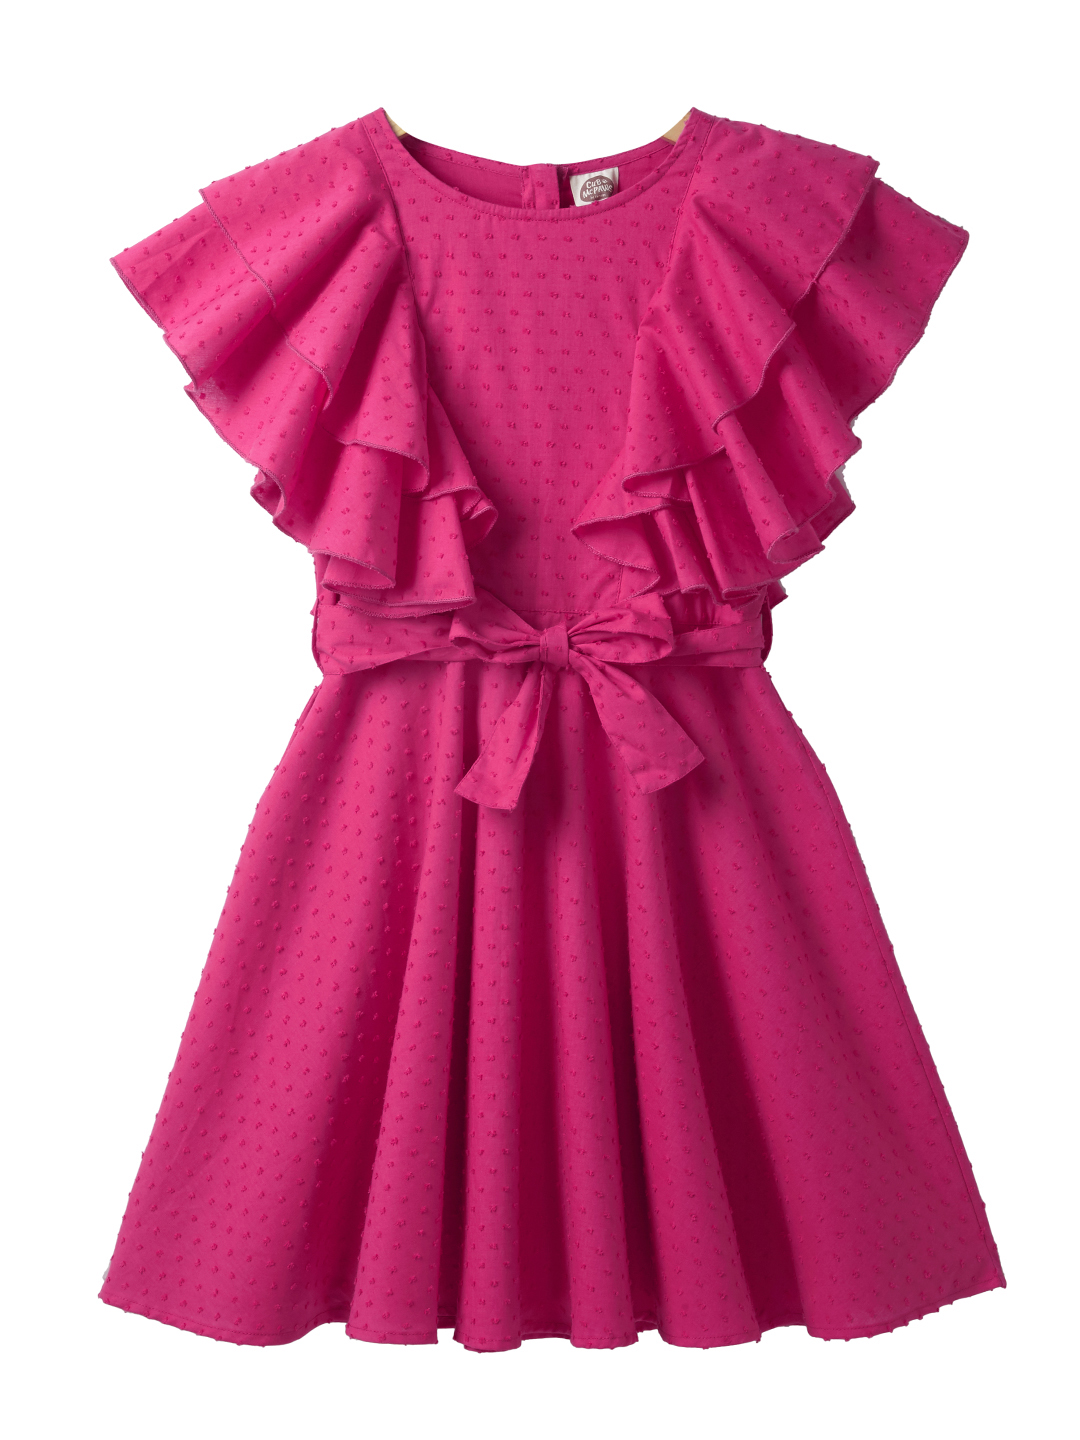 Ruffle Dress for Girl Online Shopping